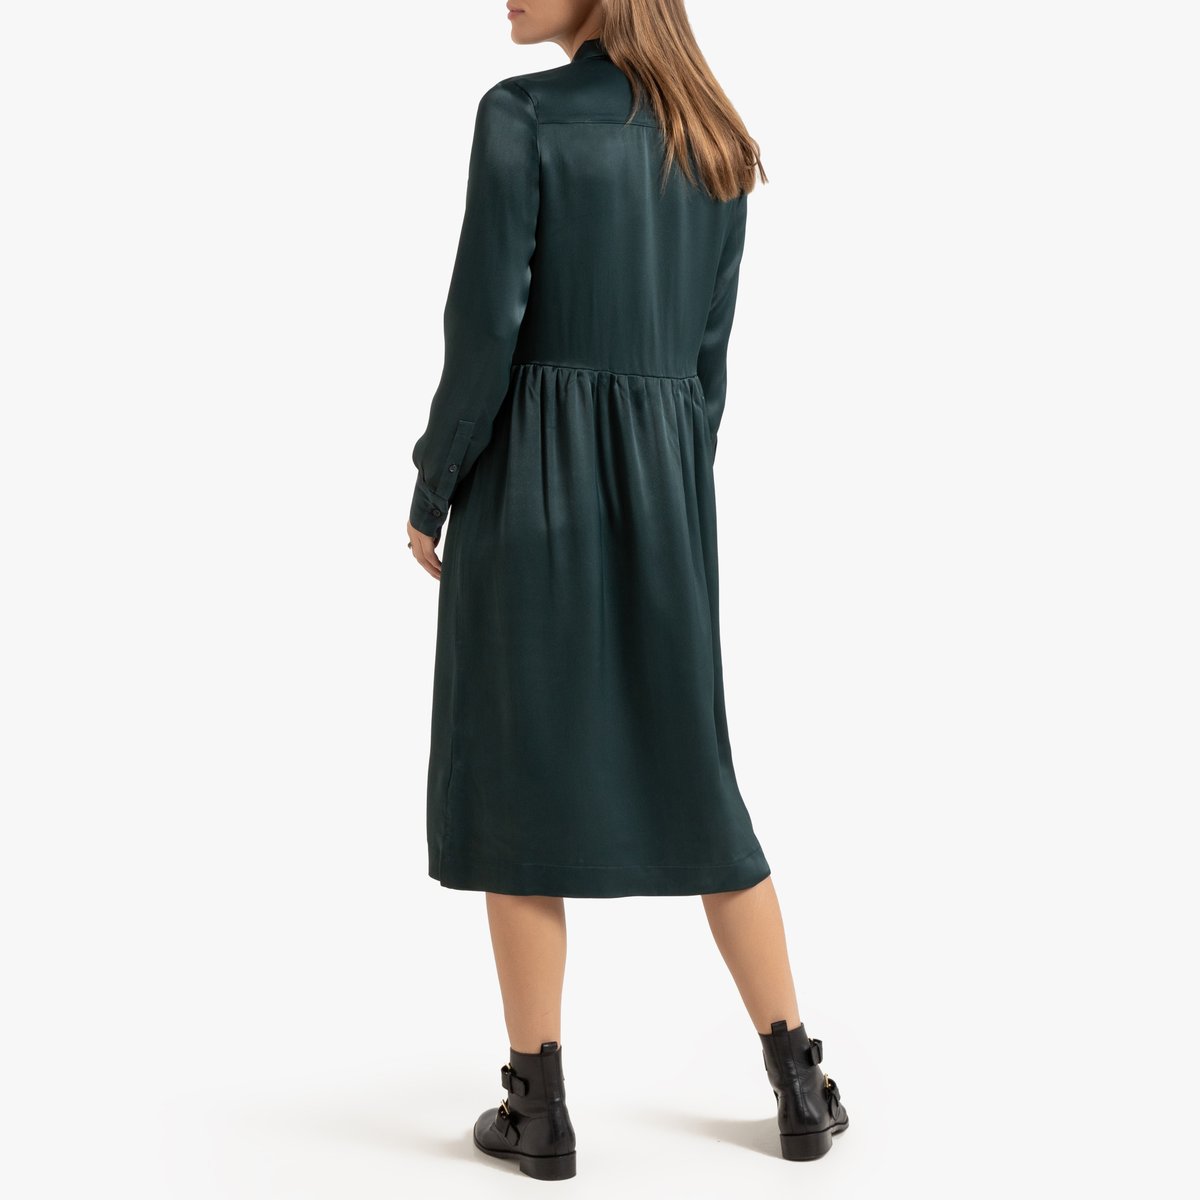 Платье-рубашка La Redoute Миди с длинными рукавами 40 (FR) - 46 (RUS) зеленый, размер 40 (FR) - 46 (RUS) Миди с длинными рукавами 40 (FR) - 46 (RUS) зеленый - фото 3